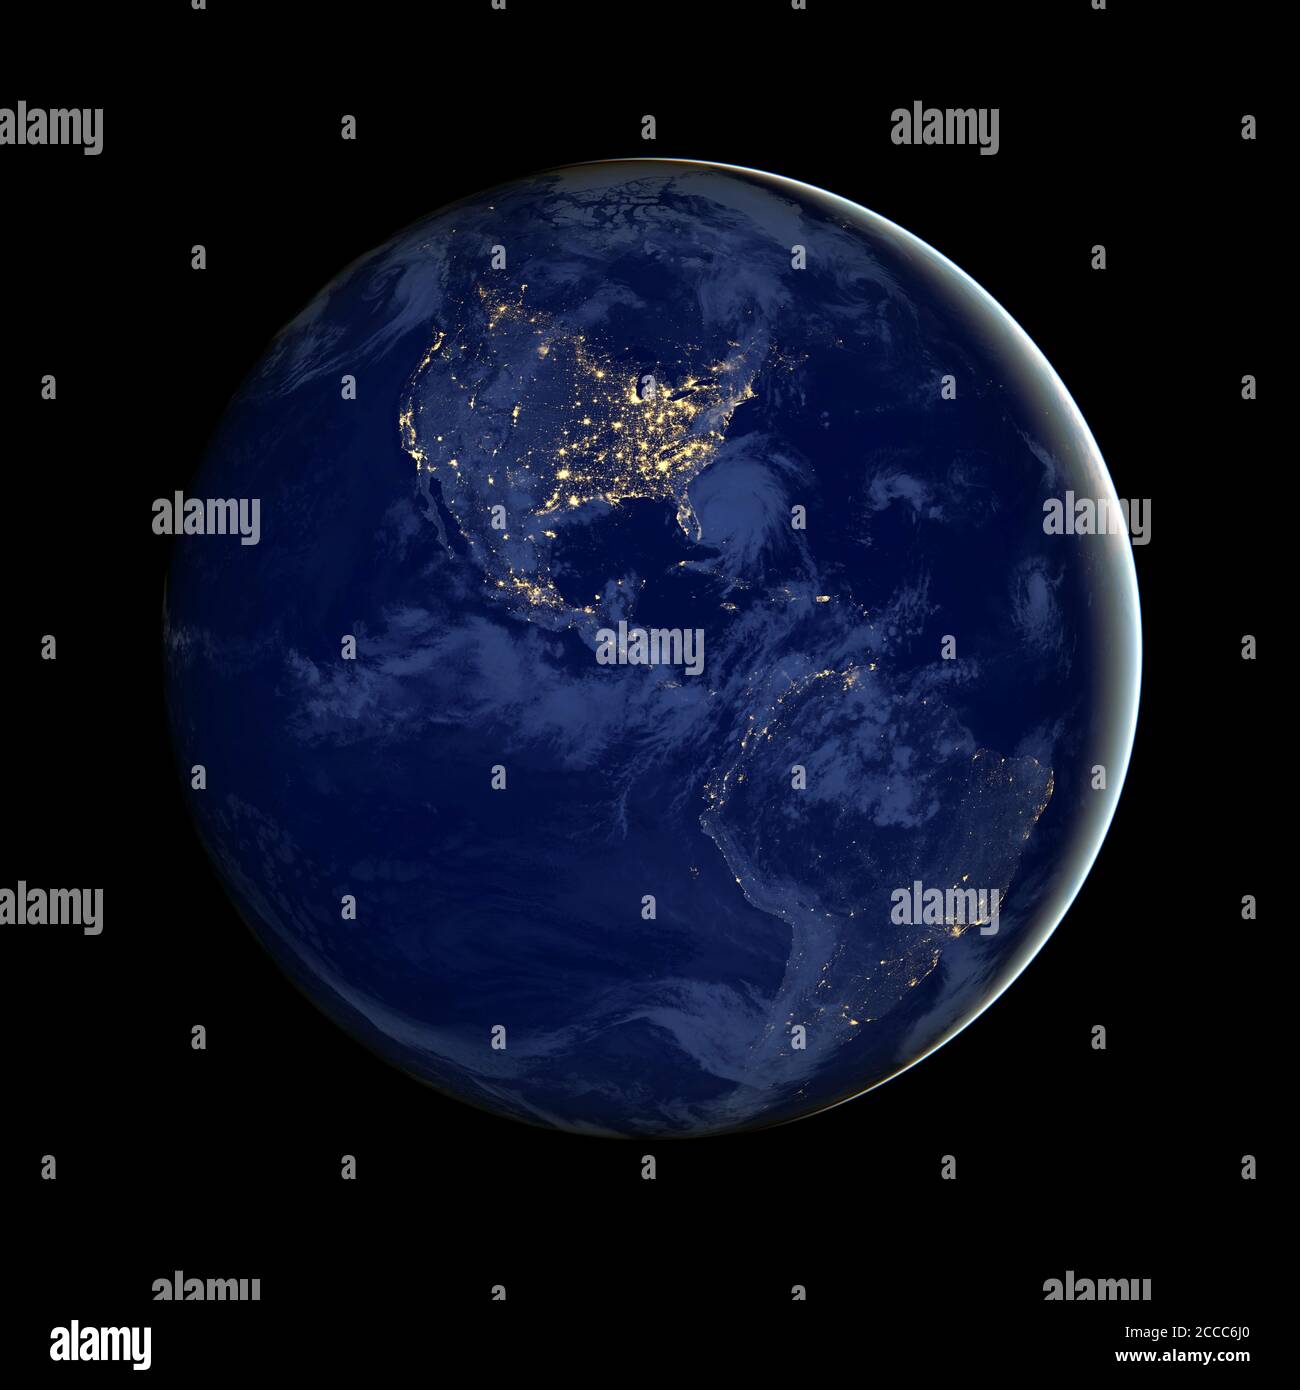 Esta imagen compuesta - hecha a partir de datos satelitales de la NASA - muestra el hemisferio occidental de la Tierra por la noche - Foto: Geopix/NASA/Alamy Stock Photo Foto de stock